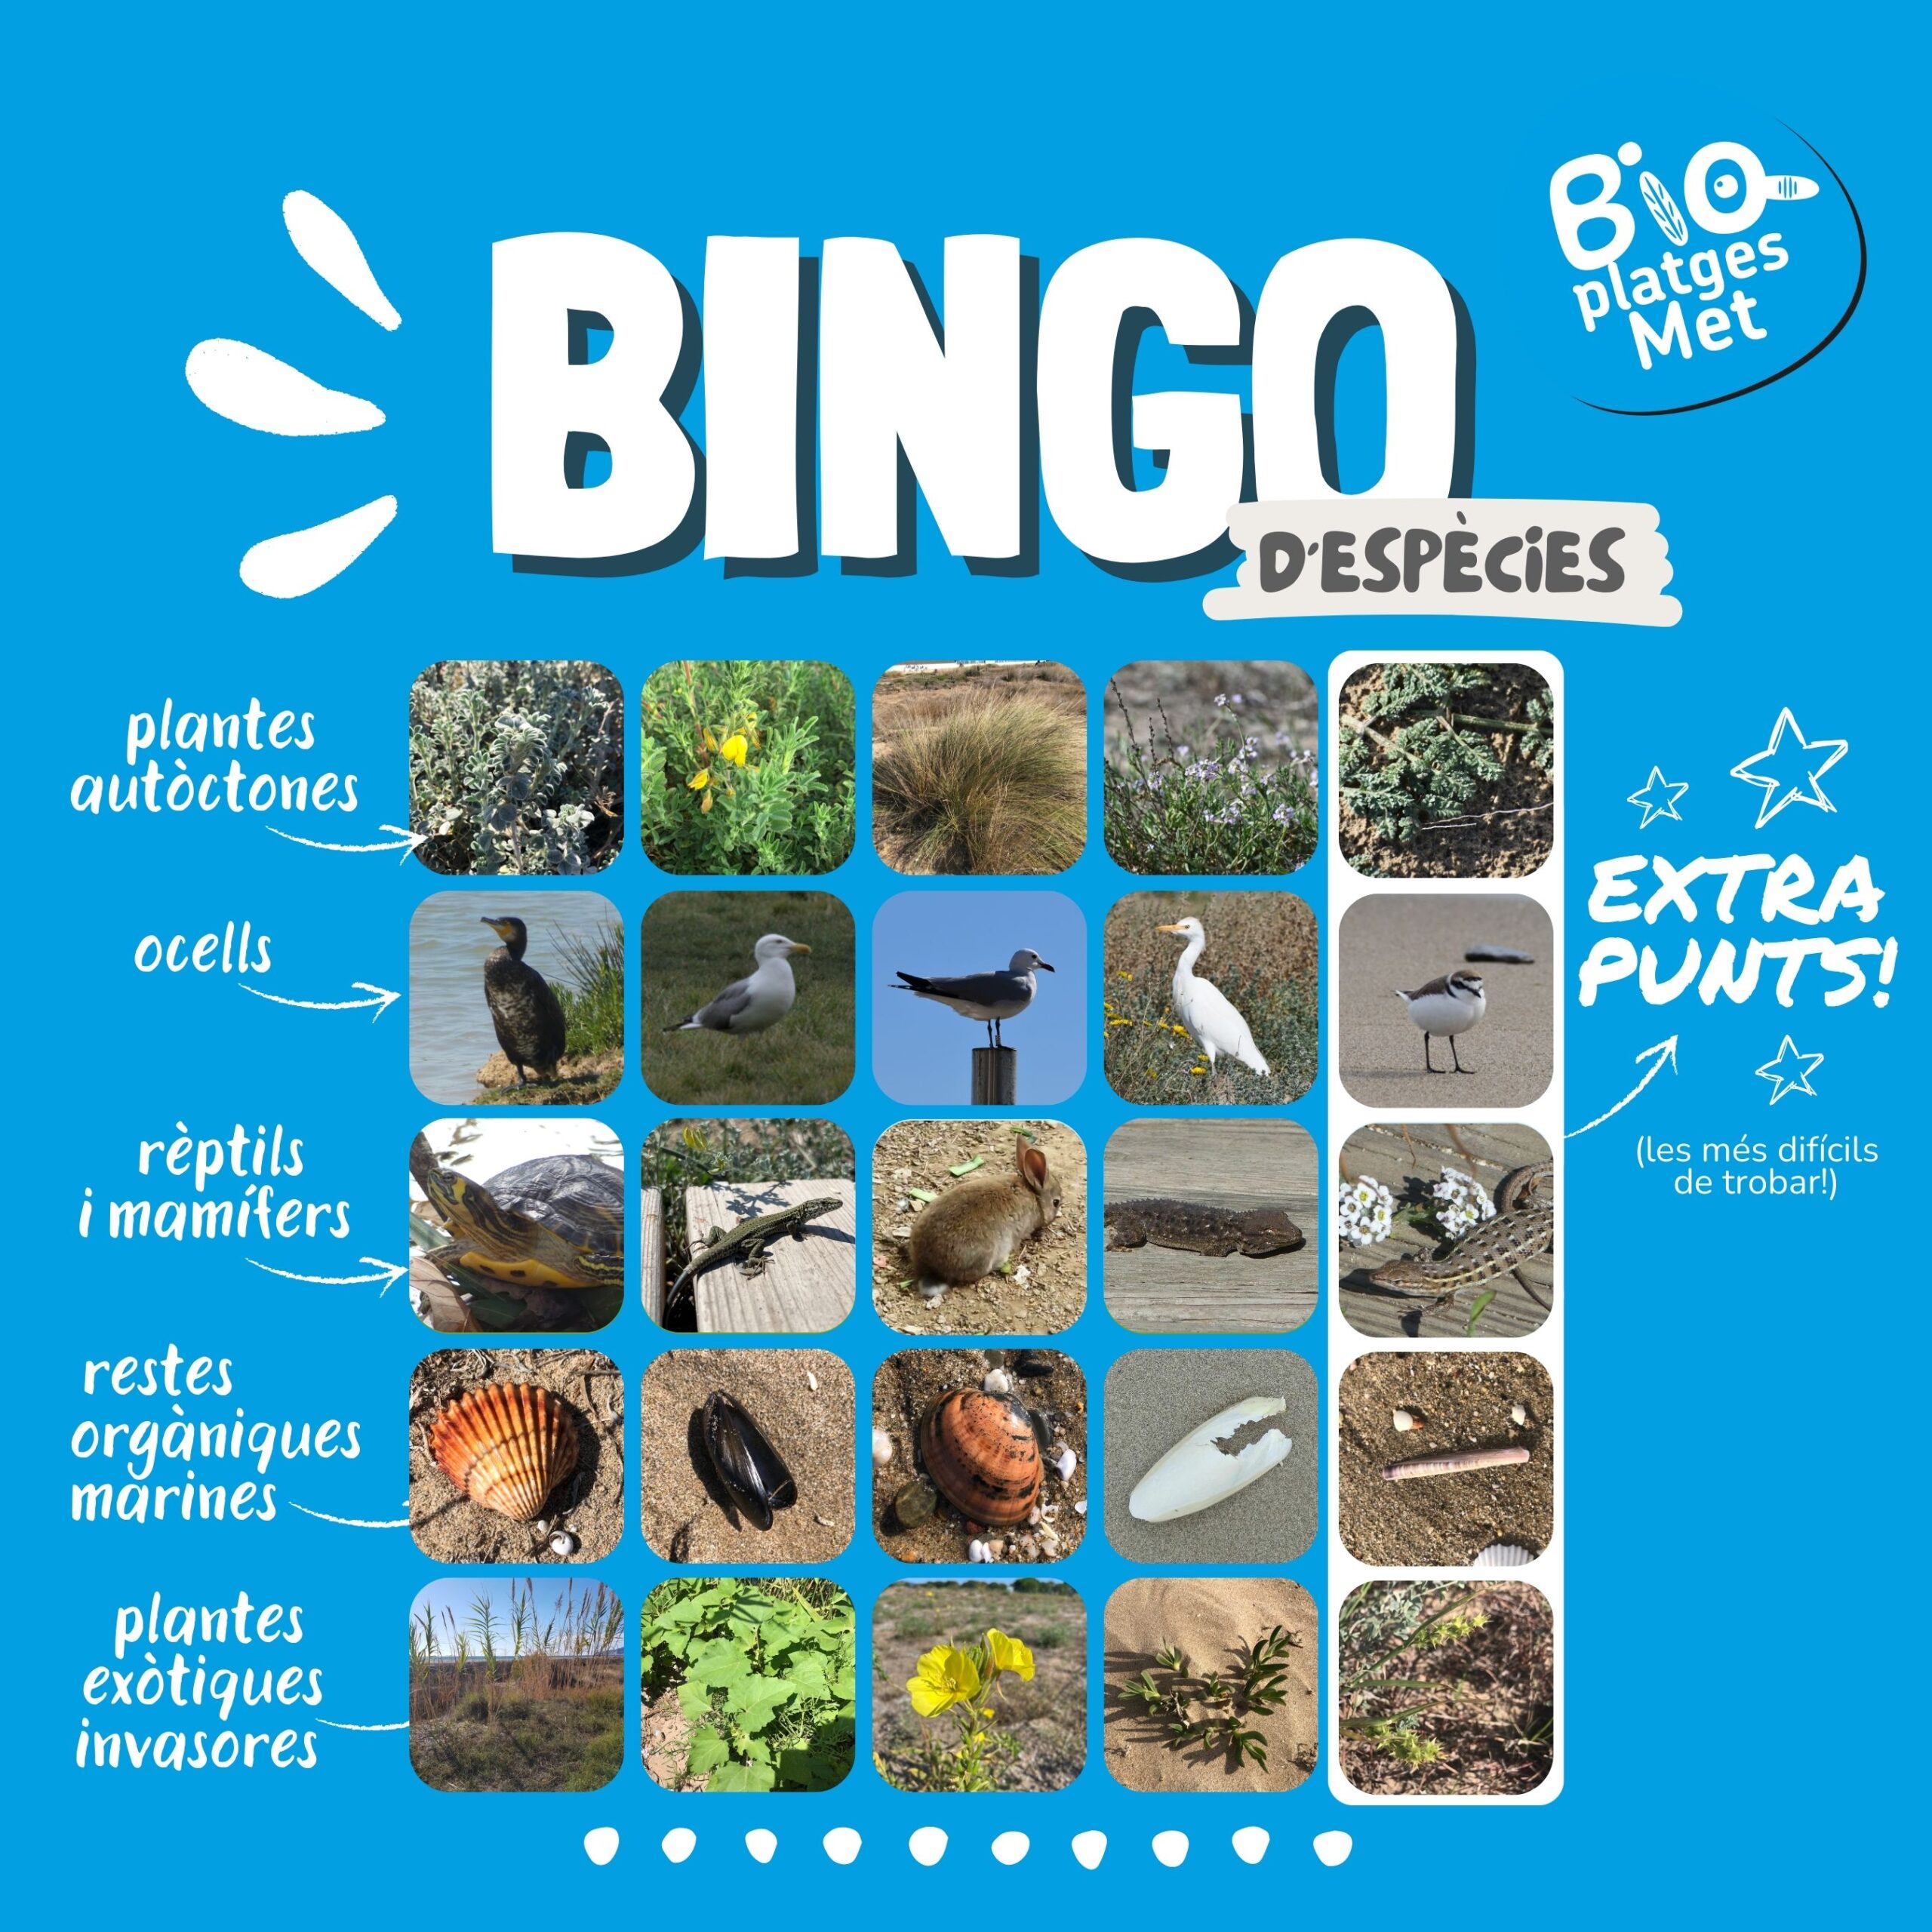 Concurs d’estiu: Bingo d’Espècies de BioPlatgesMet!